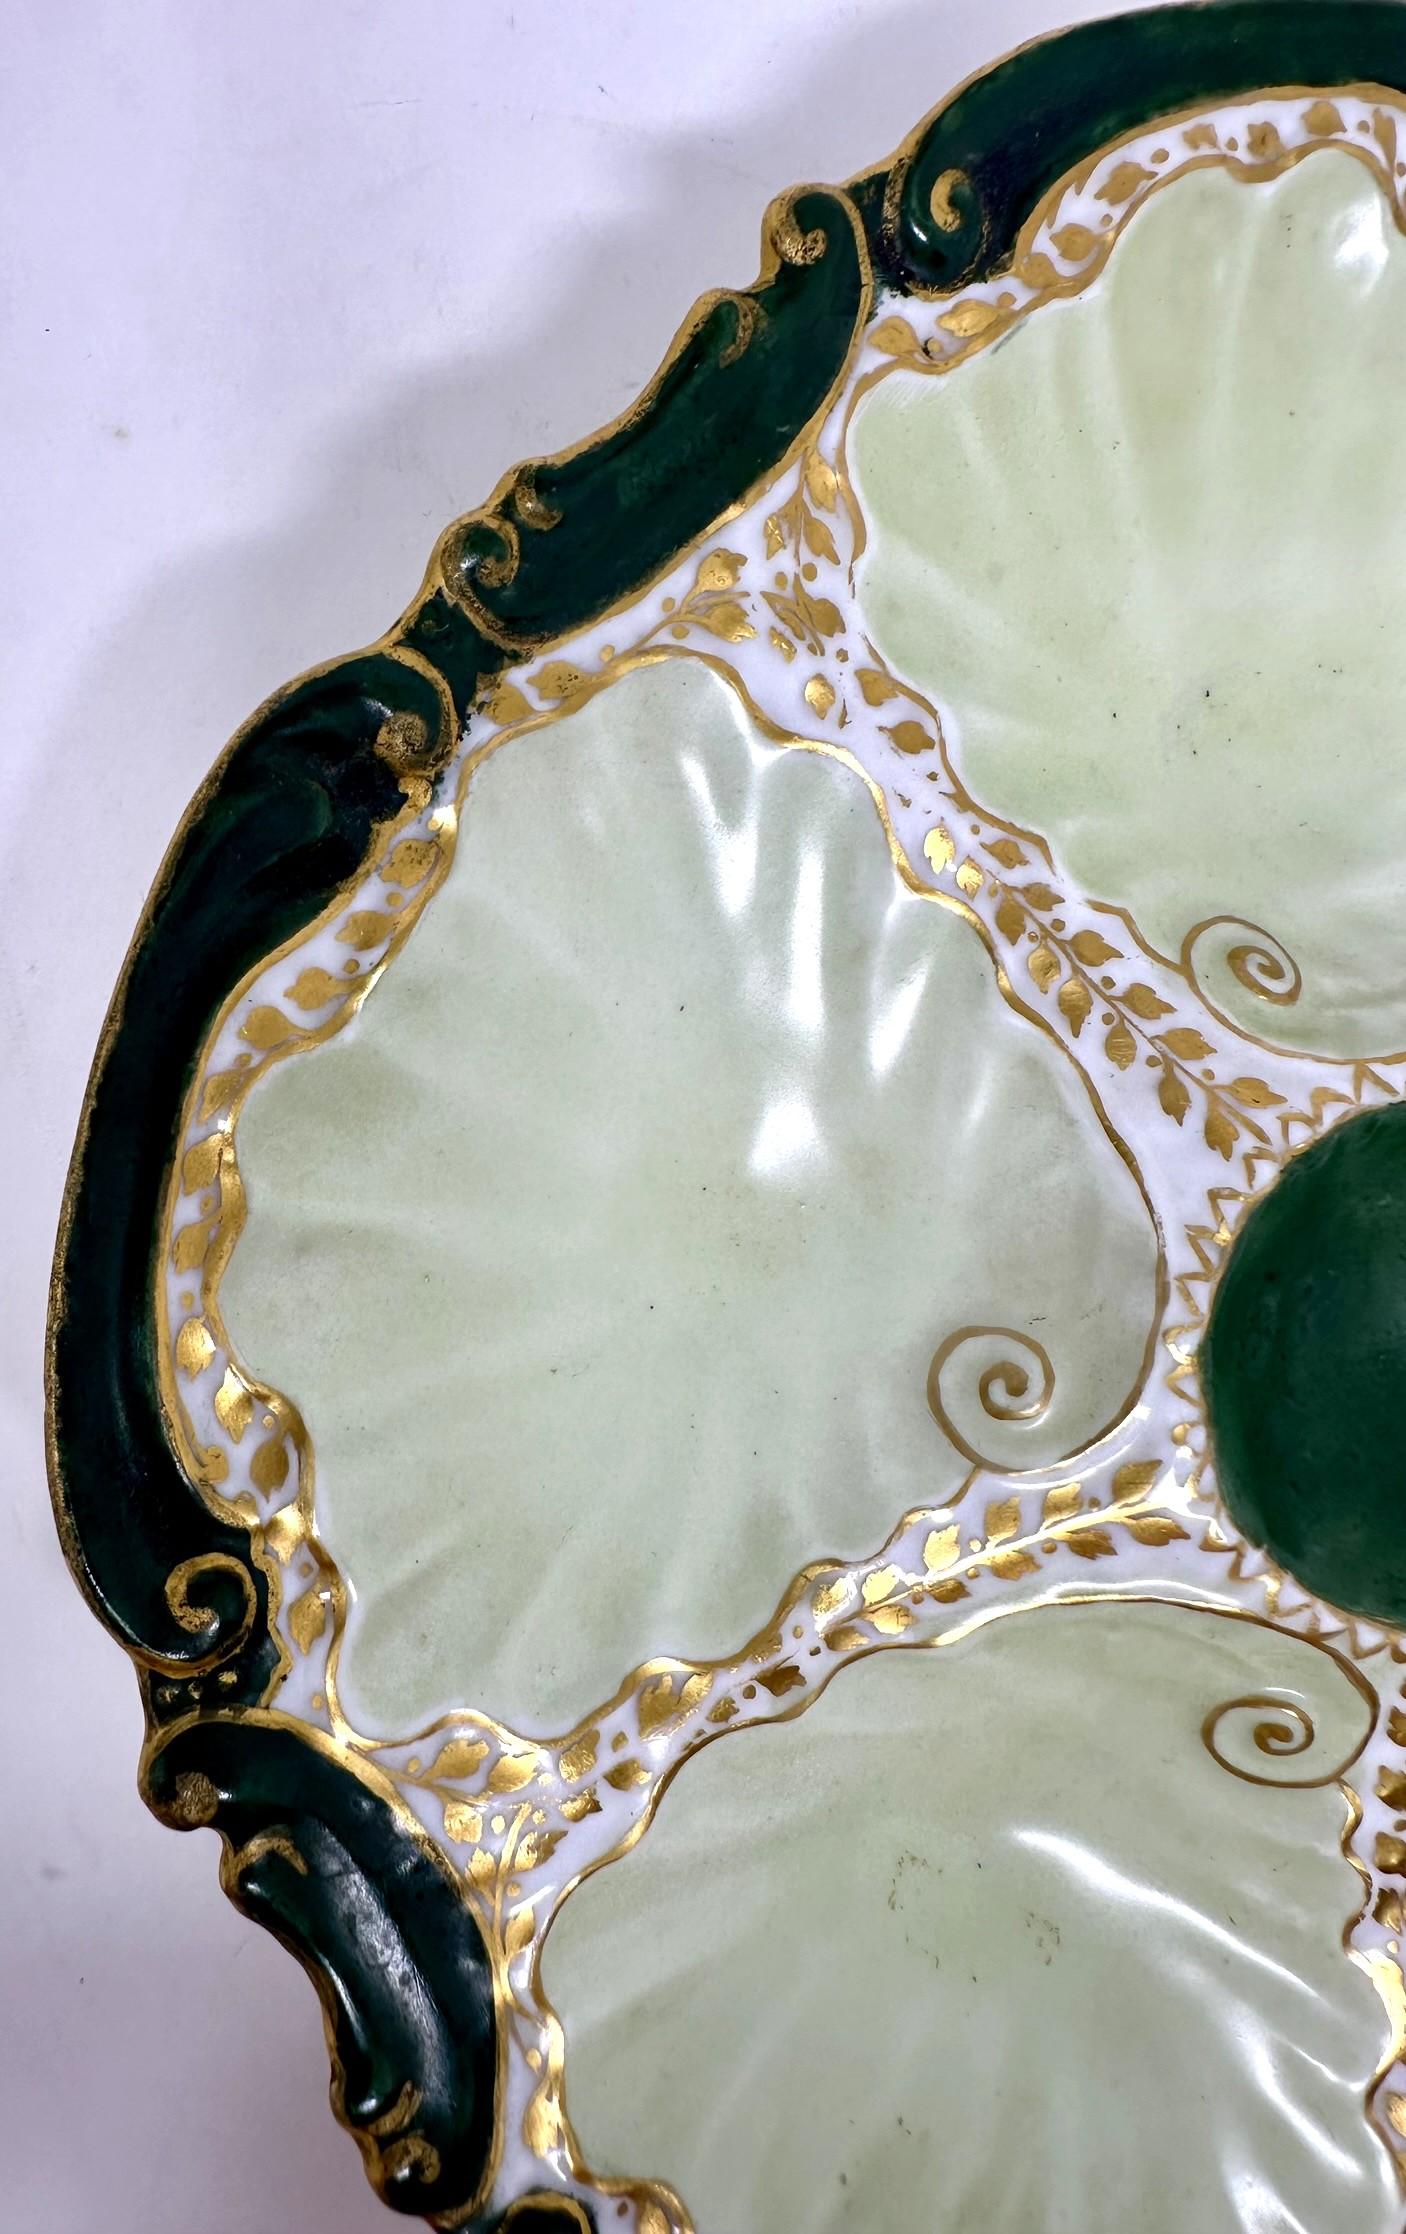 Ancienne assiette à huîtres en porcelaine de Limoges verte et or, Circa 1890-1900.
Plaque en forme d'huître dans des tons frappants de vert forêt, d'or et de chartreuse pâle.